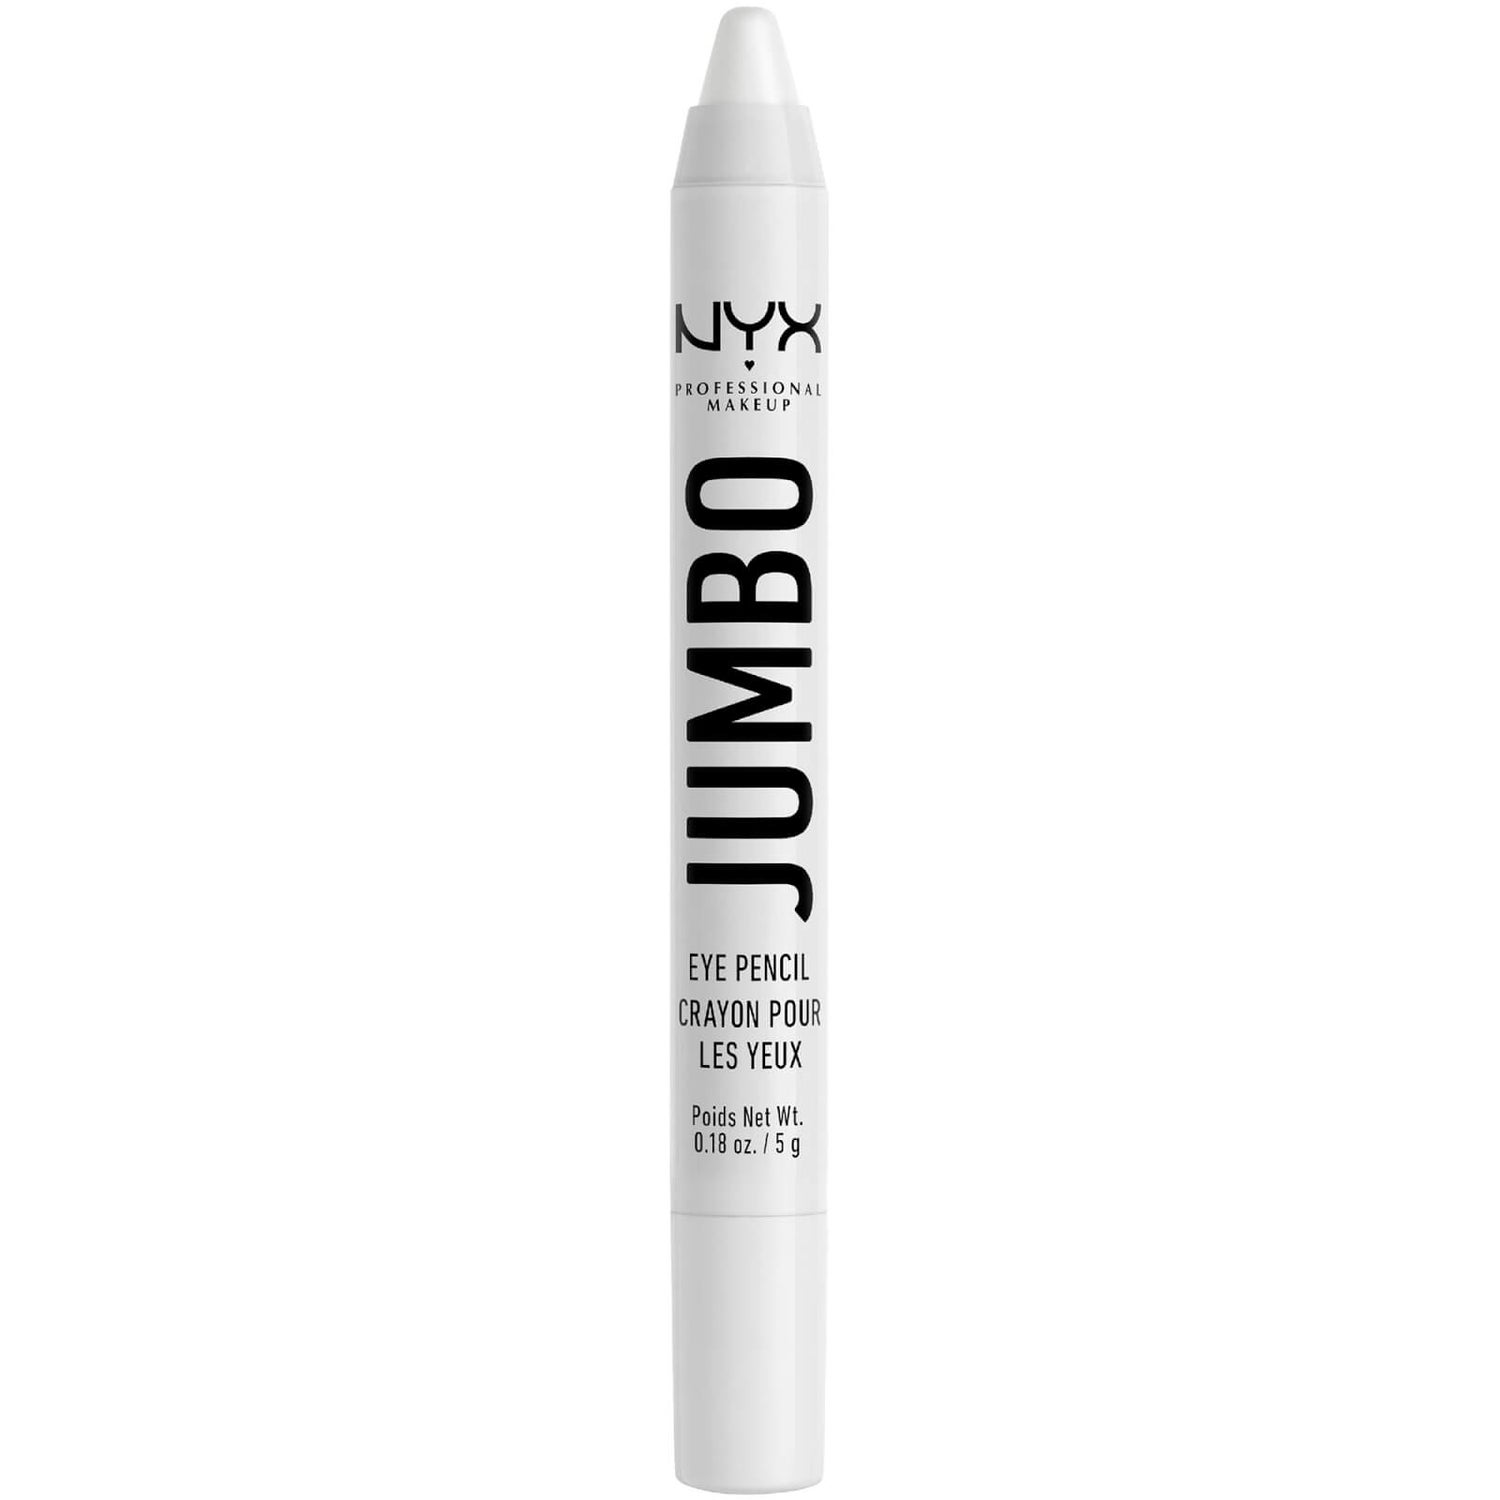 NYX Professional Makeup Jumbo Eye Pencil (Varei tonalità)